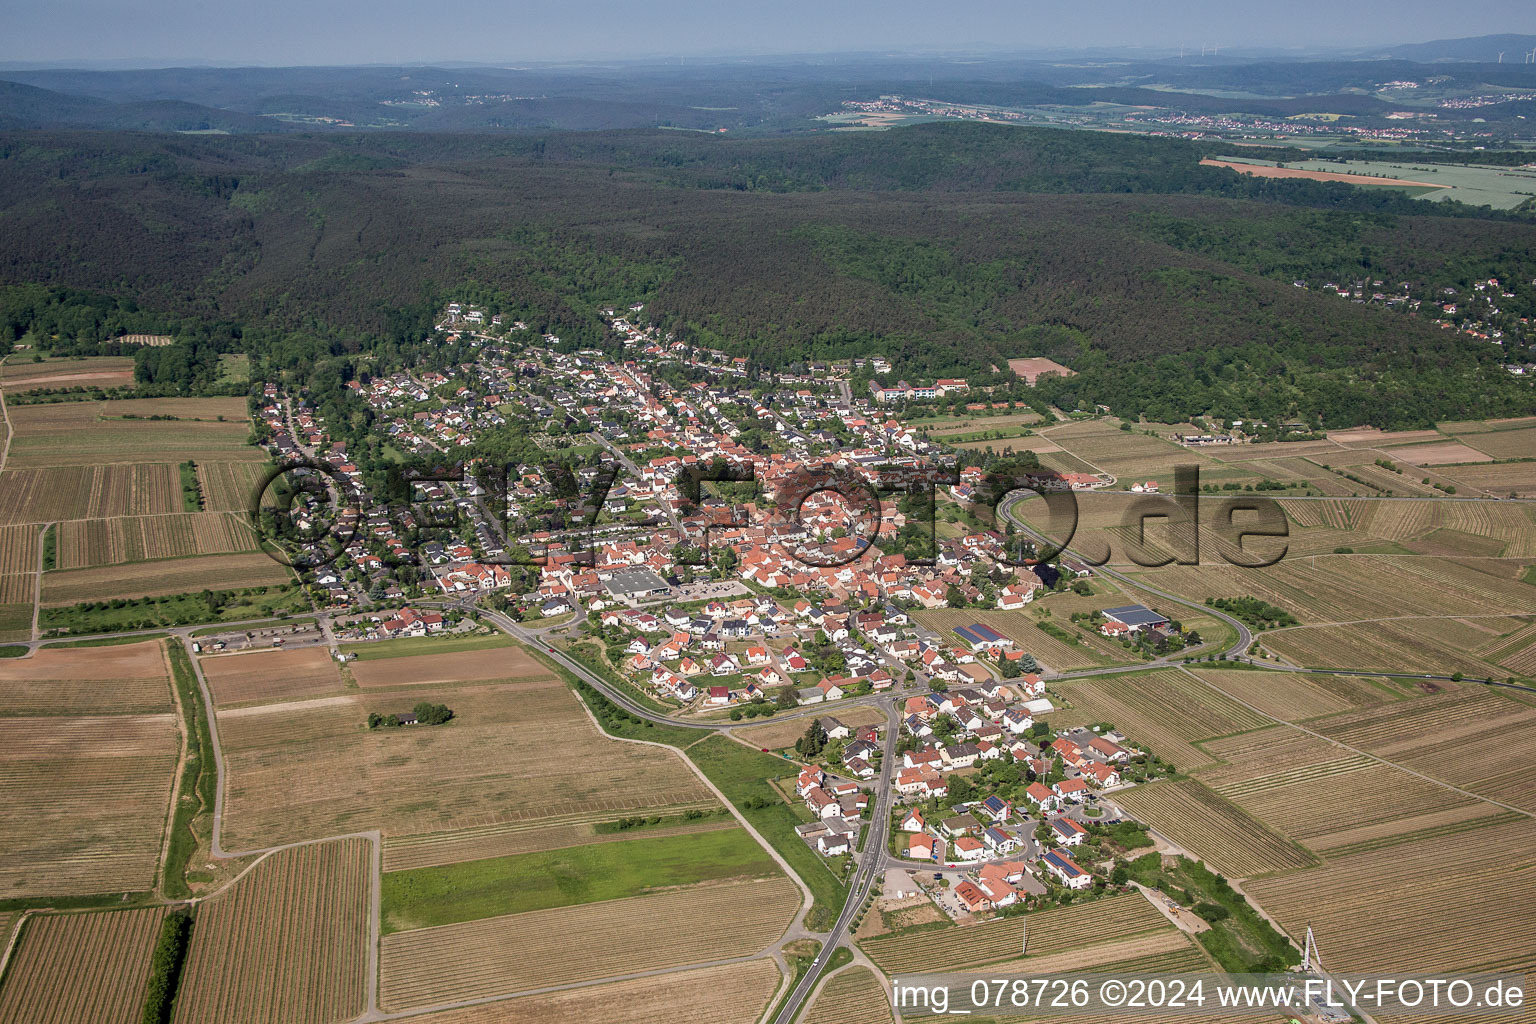 Vue aérienne de Champs agricoles et surfaces utilisables à Weisenheim am Berg dans le département Rhénanie-Palatinat, Allemagne